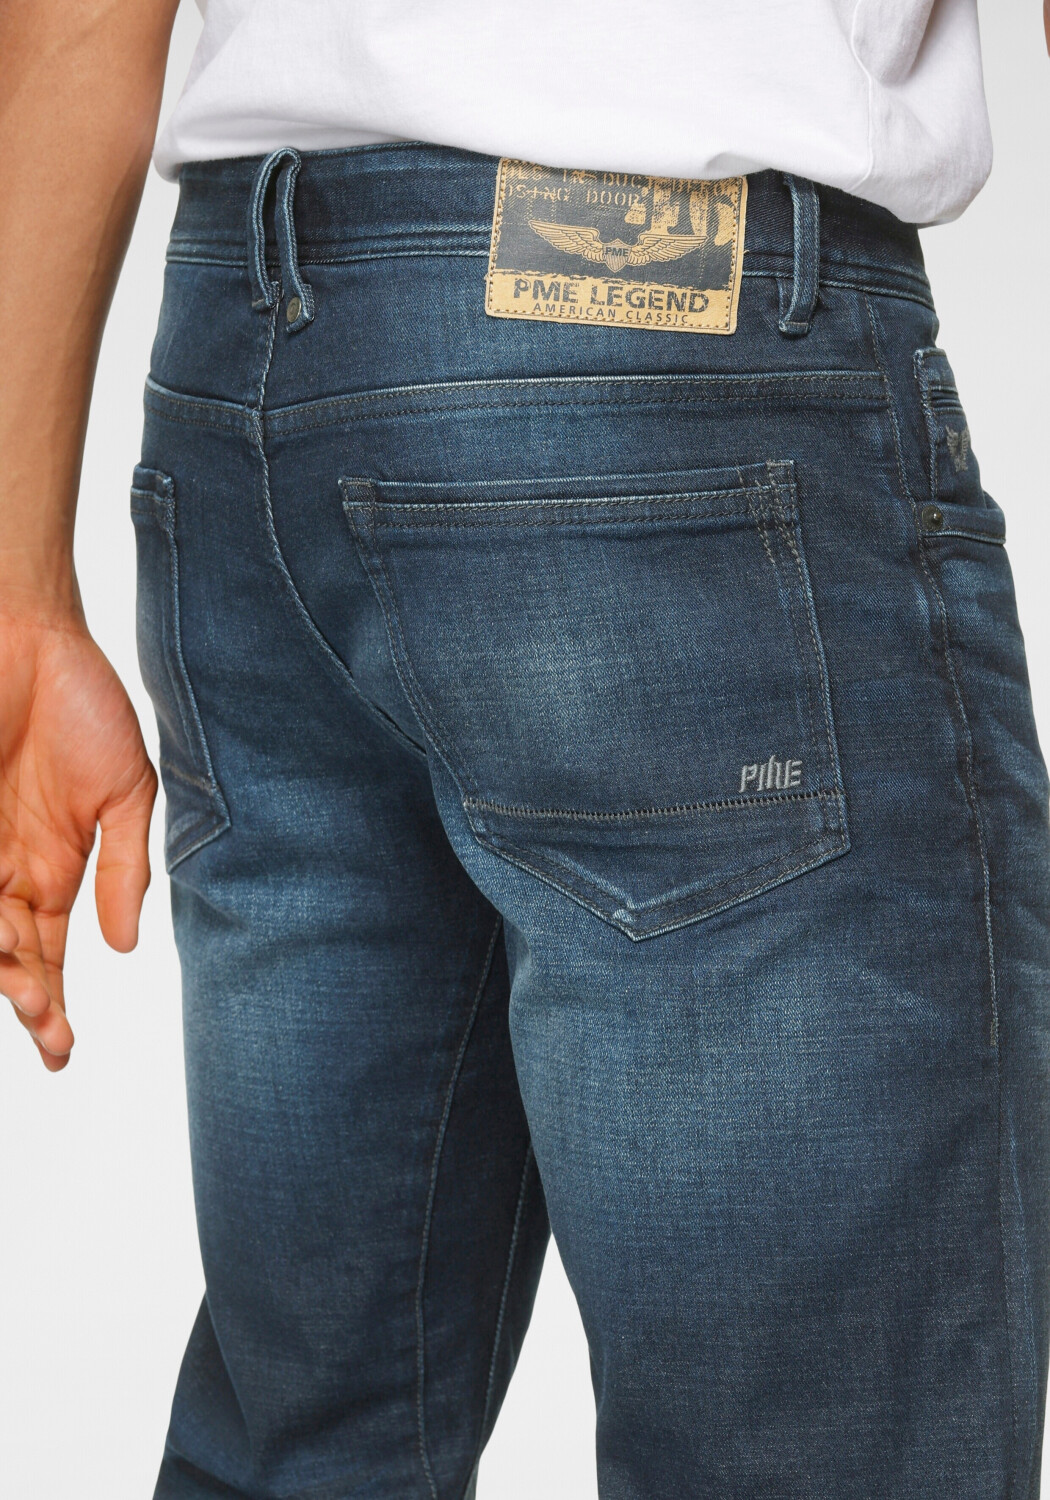 PME Legend Tailwheel Slim Fit ab wash € Jeans dark | 49,99 Preisvergleich bei